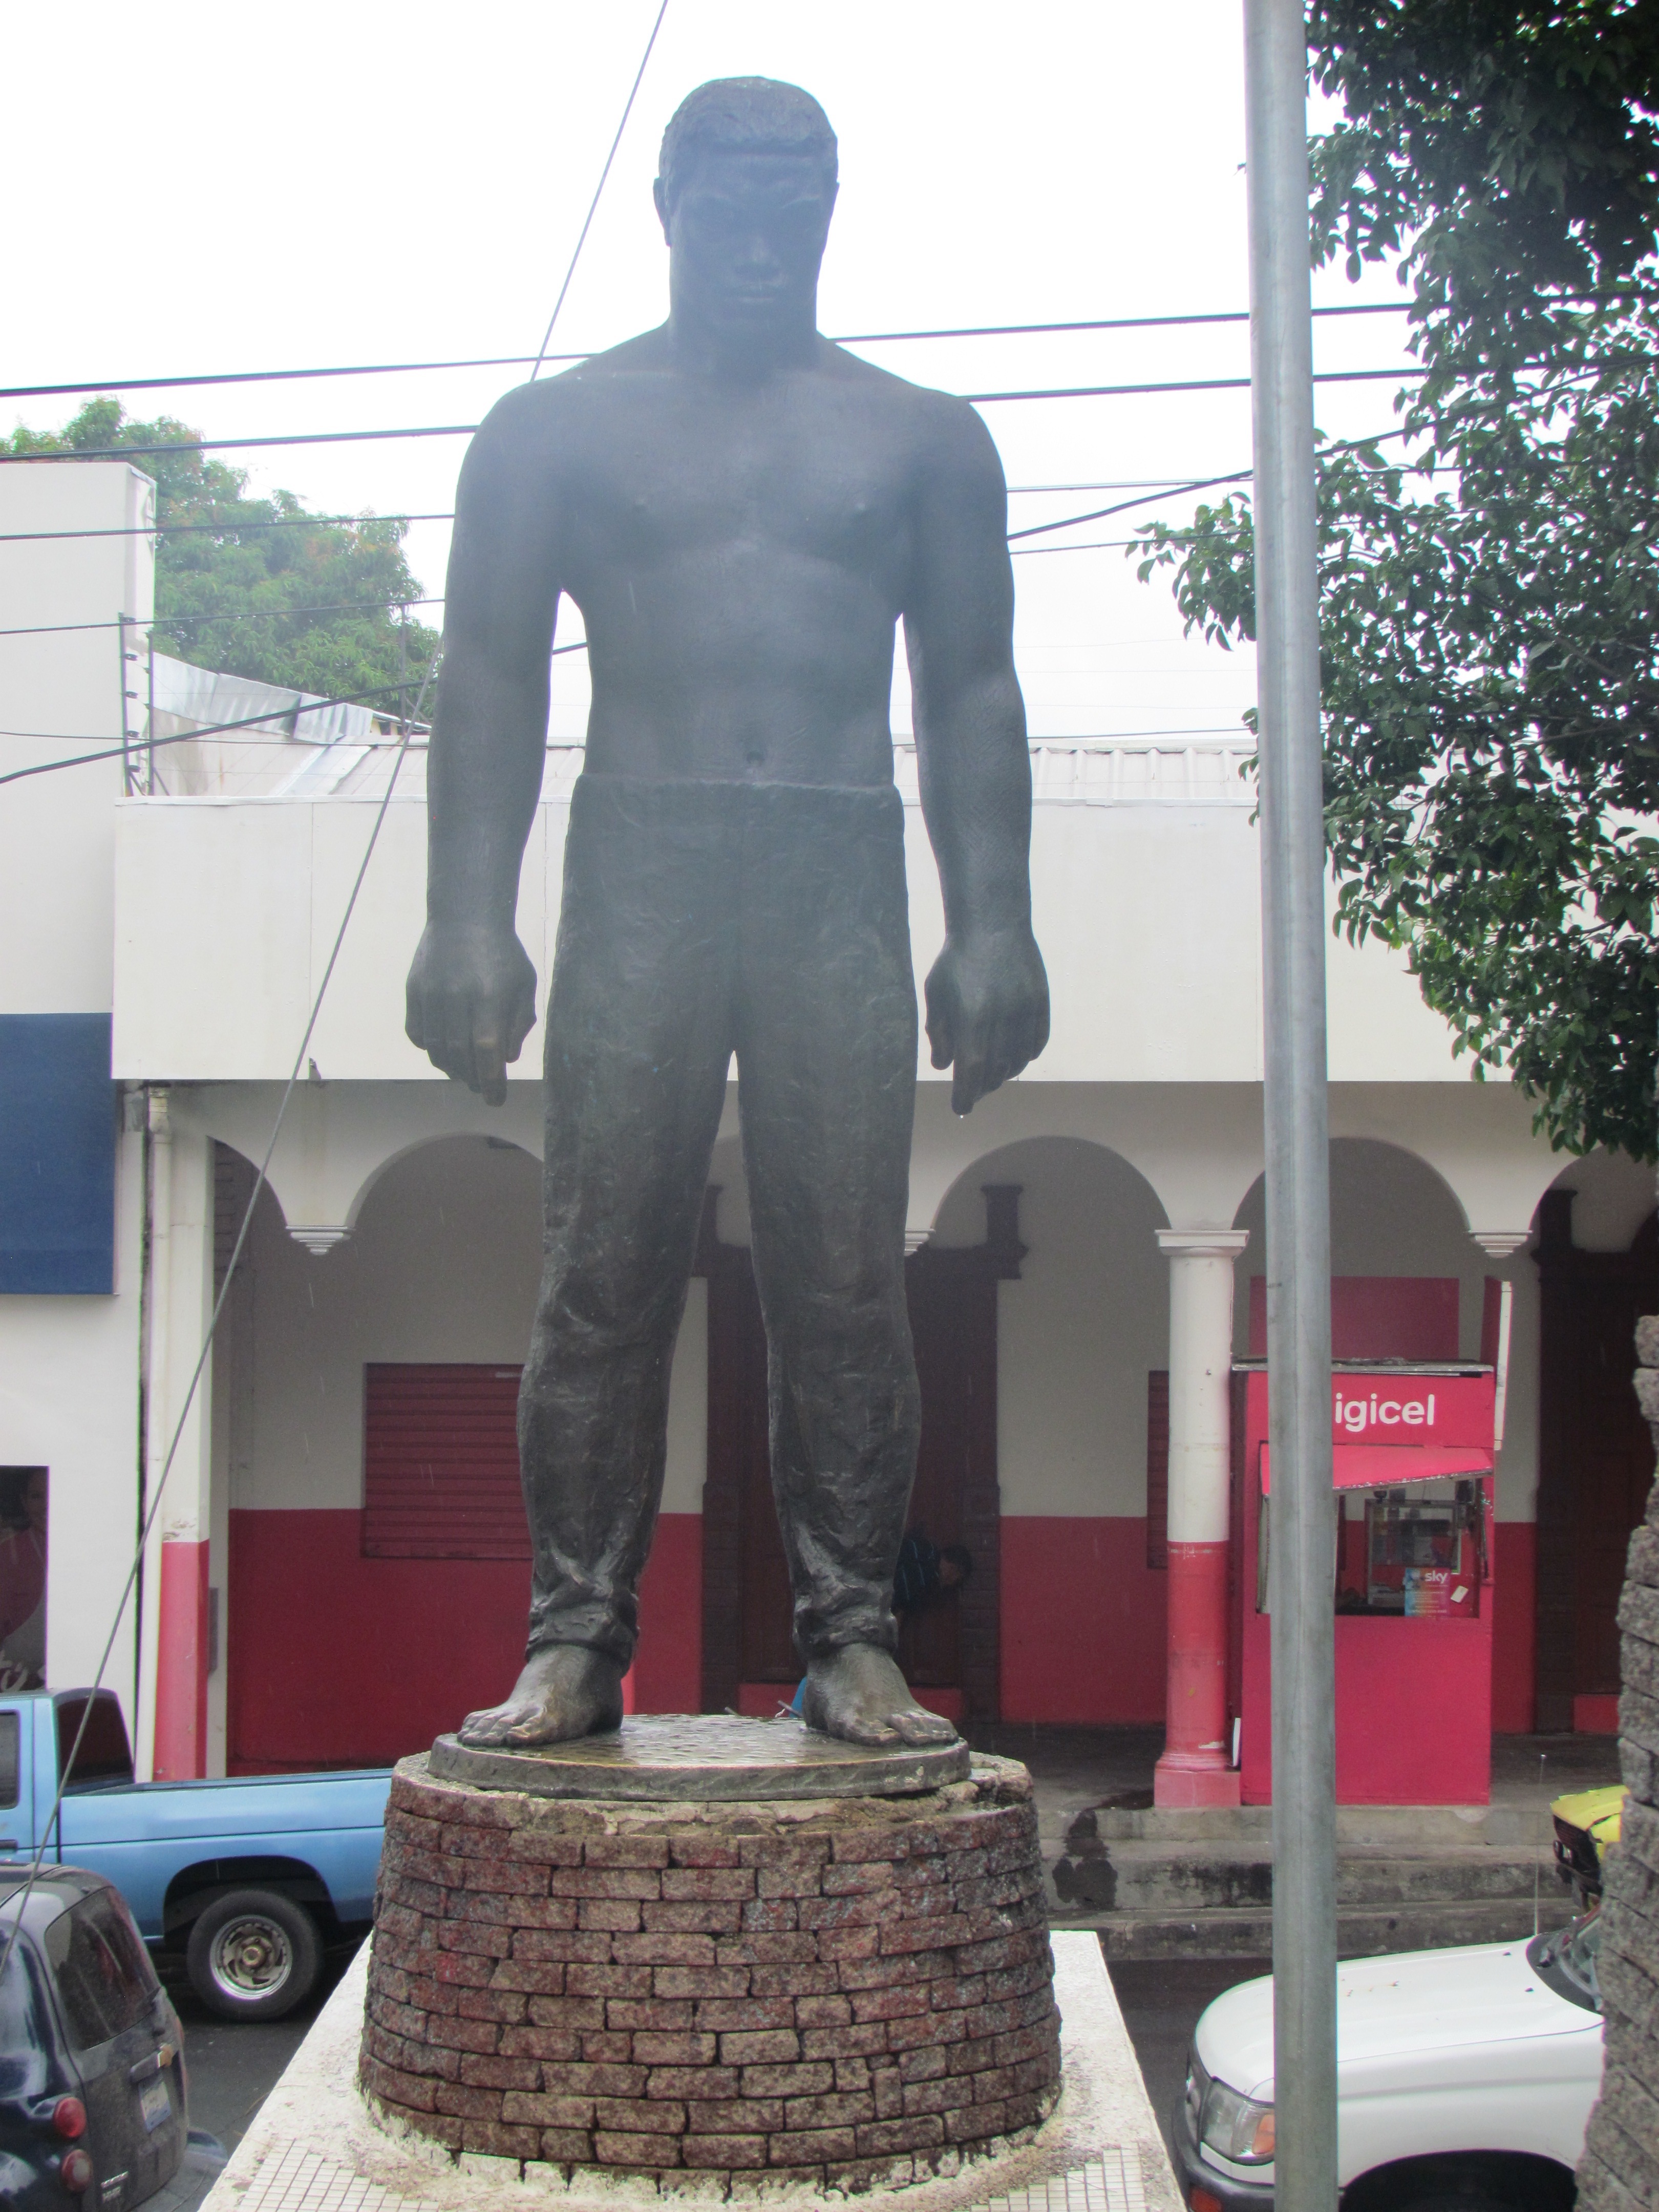 Zacatecoluca. Hombre-Monumento homenaje al Padre Cañas.
. Fotografía José Heriberto Erquicia